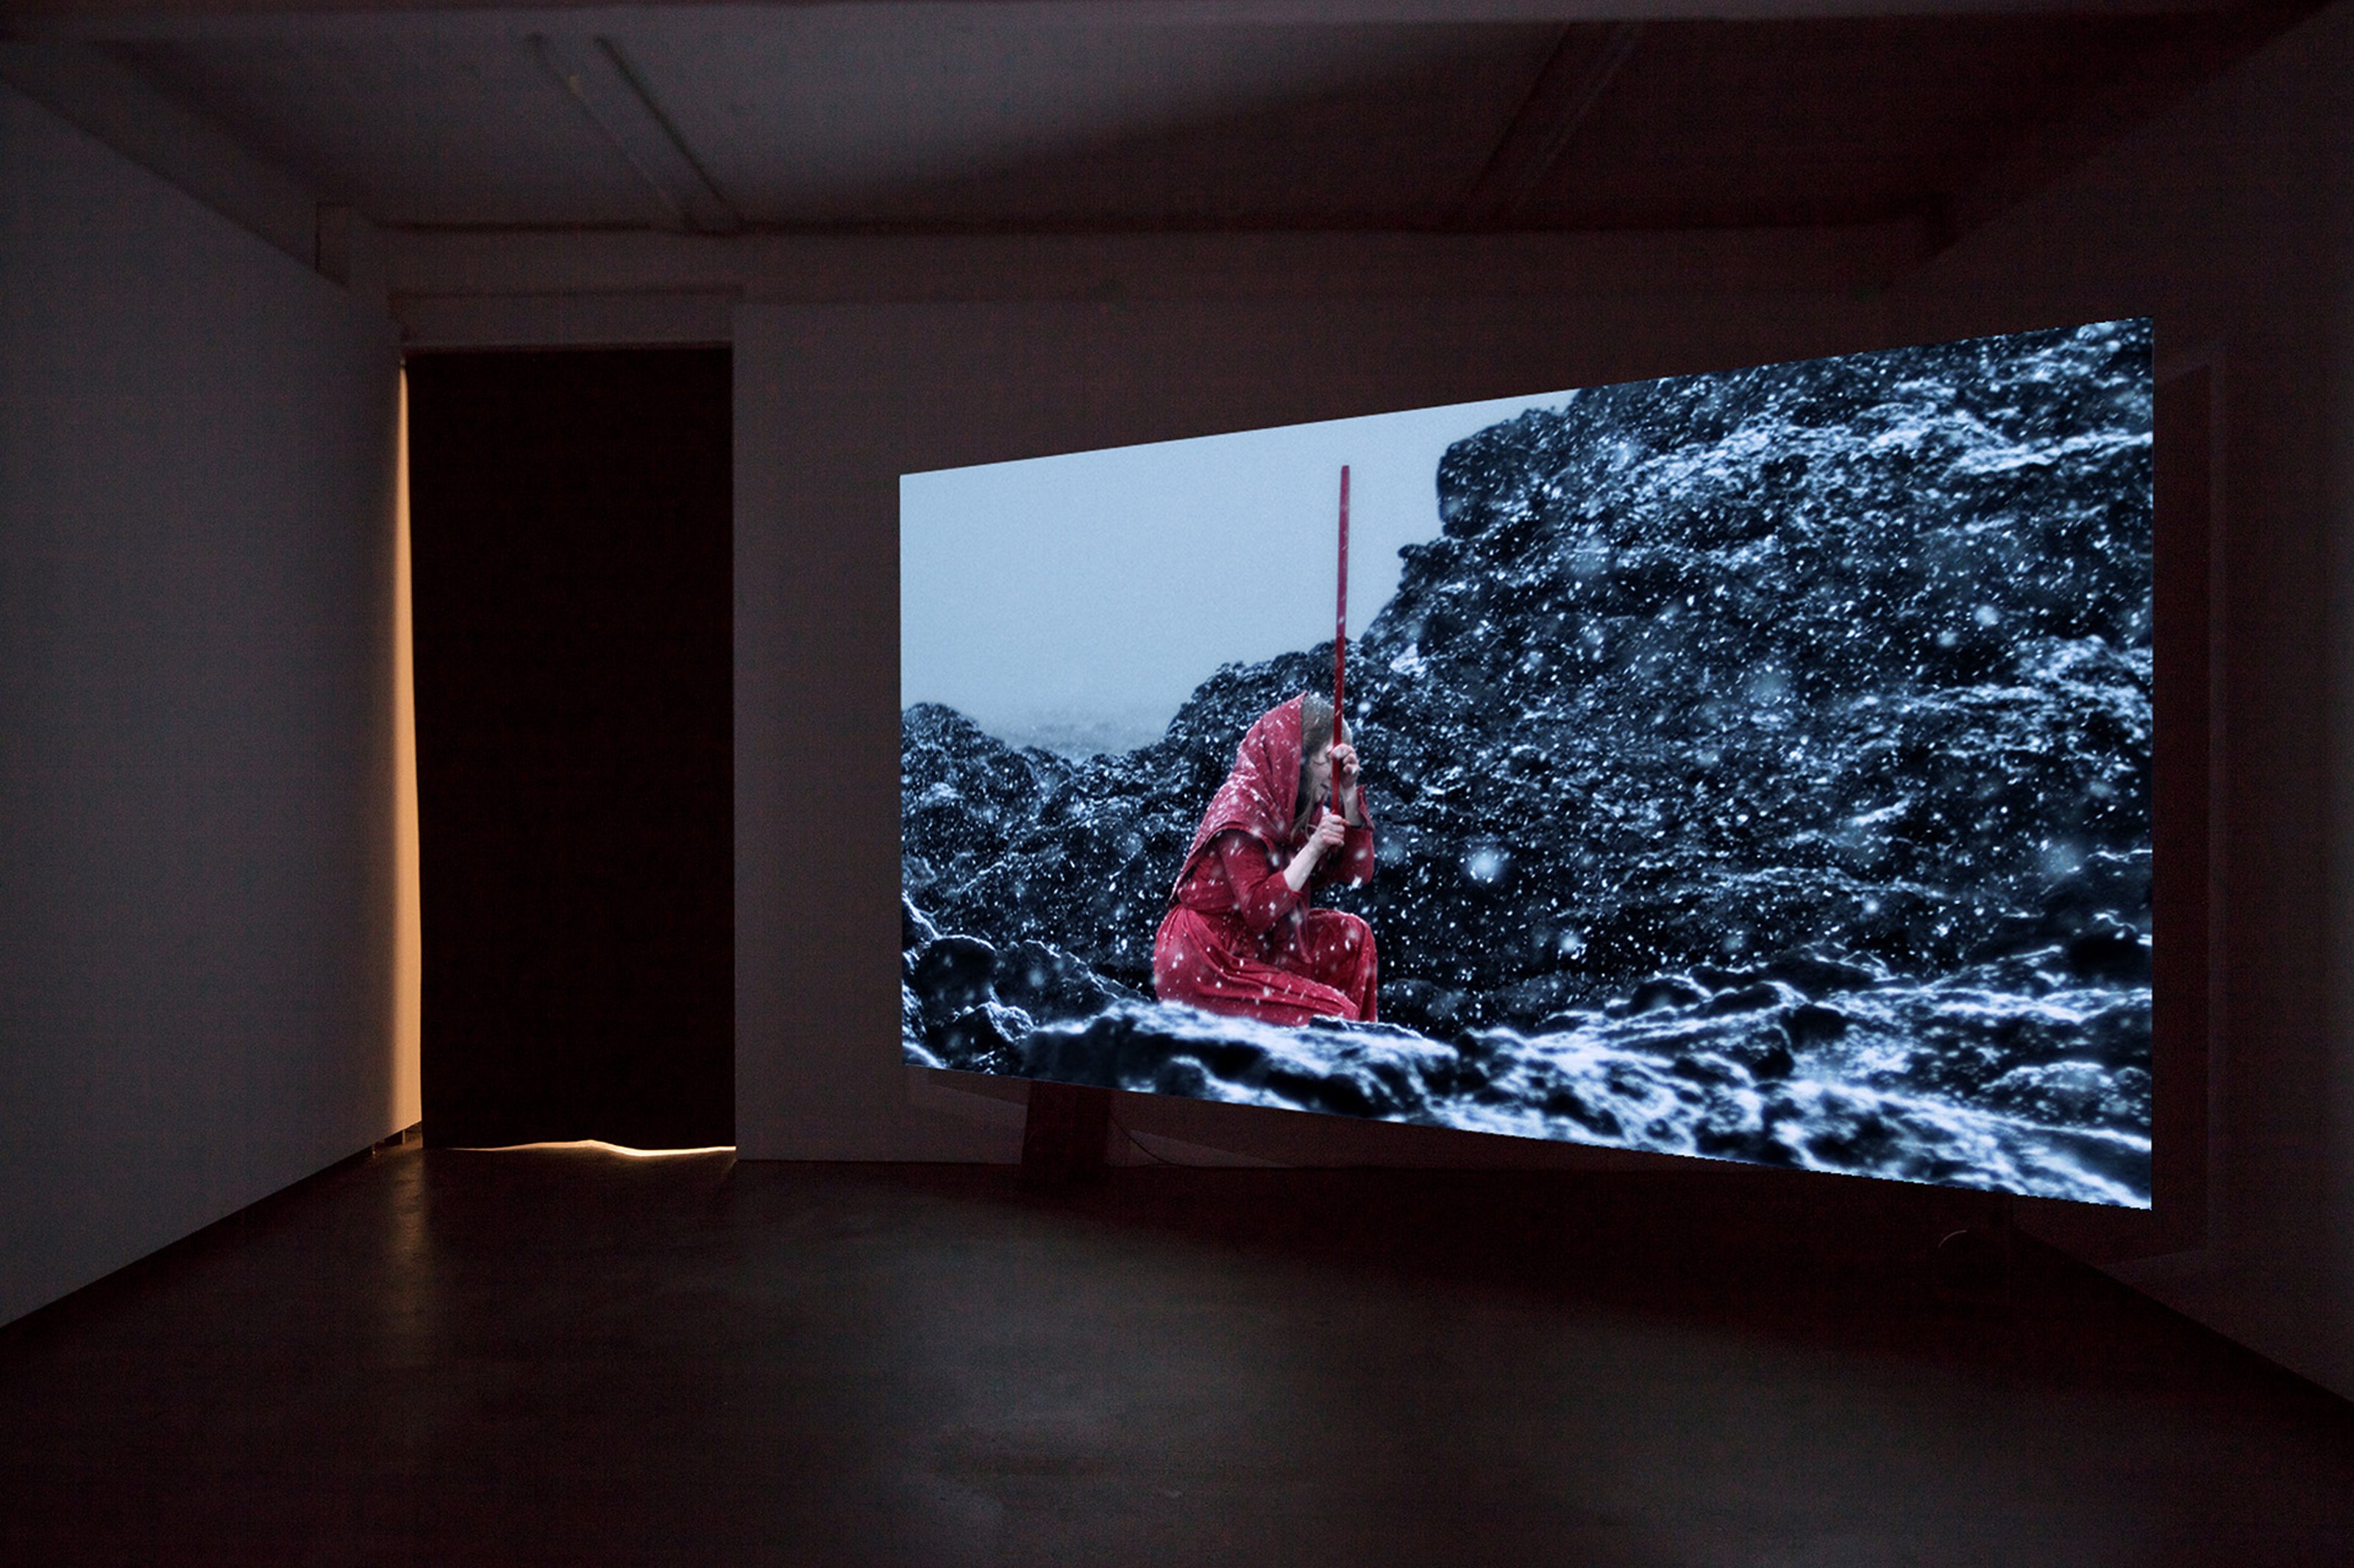 Video instalación en una sala de galería, con el vídeo reflejado en la pared. En el video, una mujer cubierta con un paño rojo está arrodillada en el suelo cubierto de nieve, sosteniendo un palo.